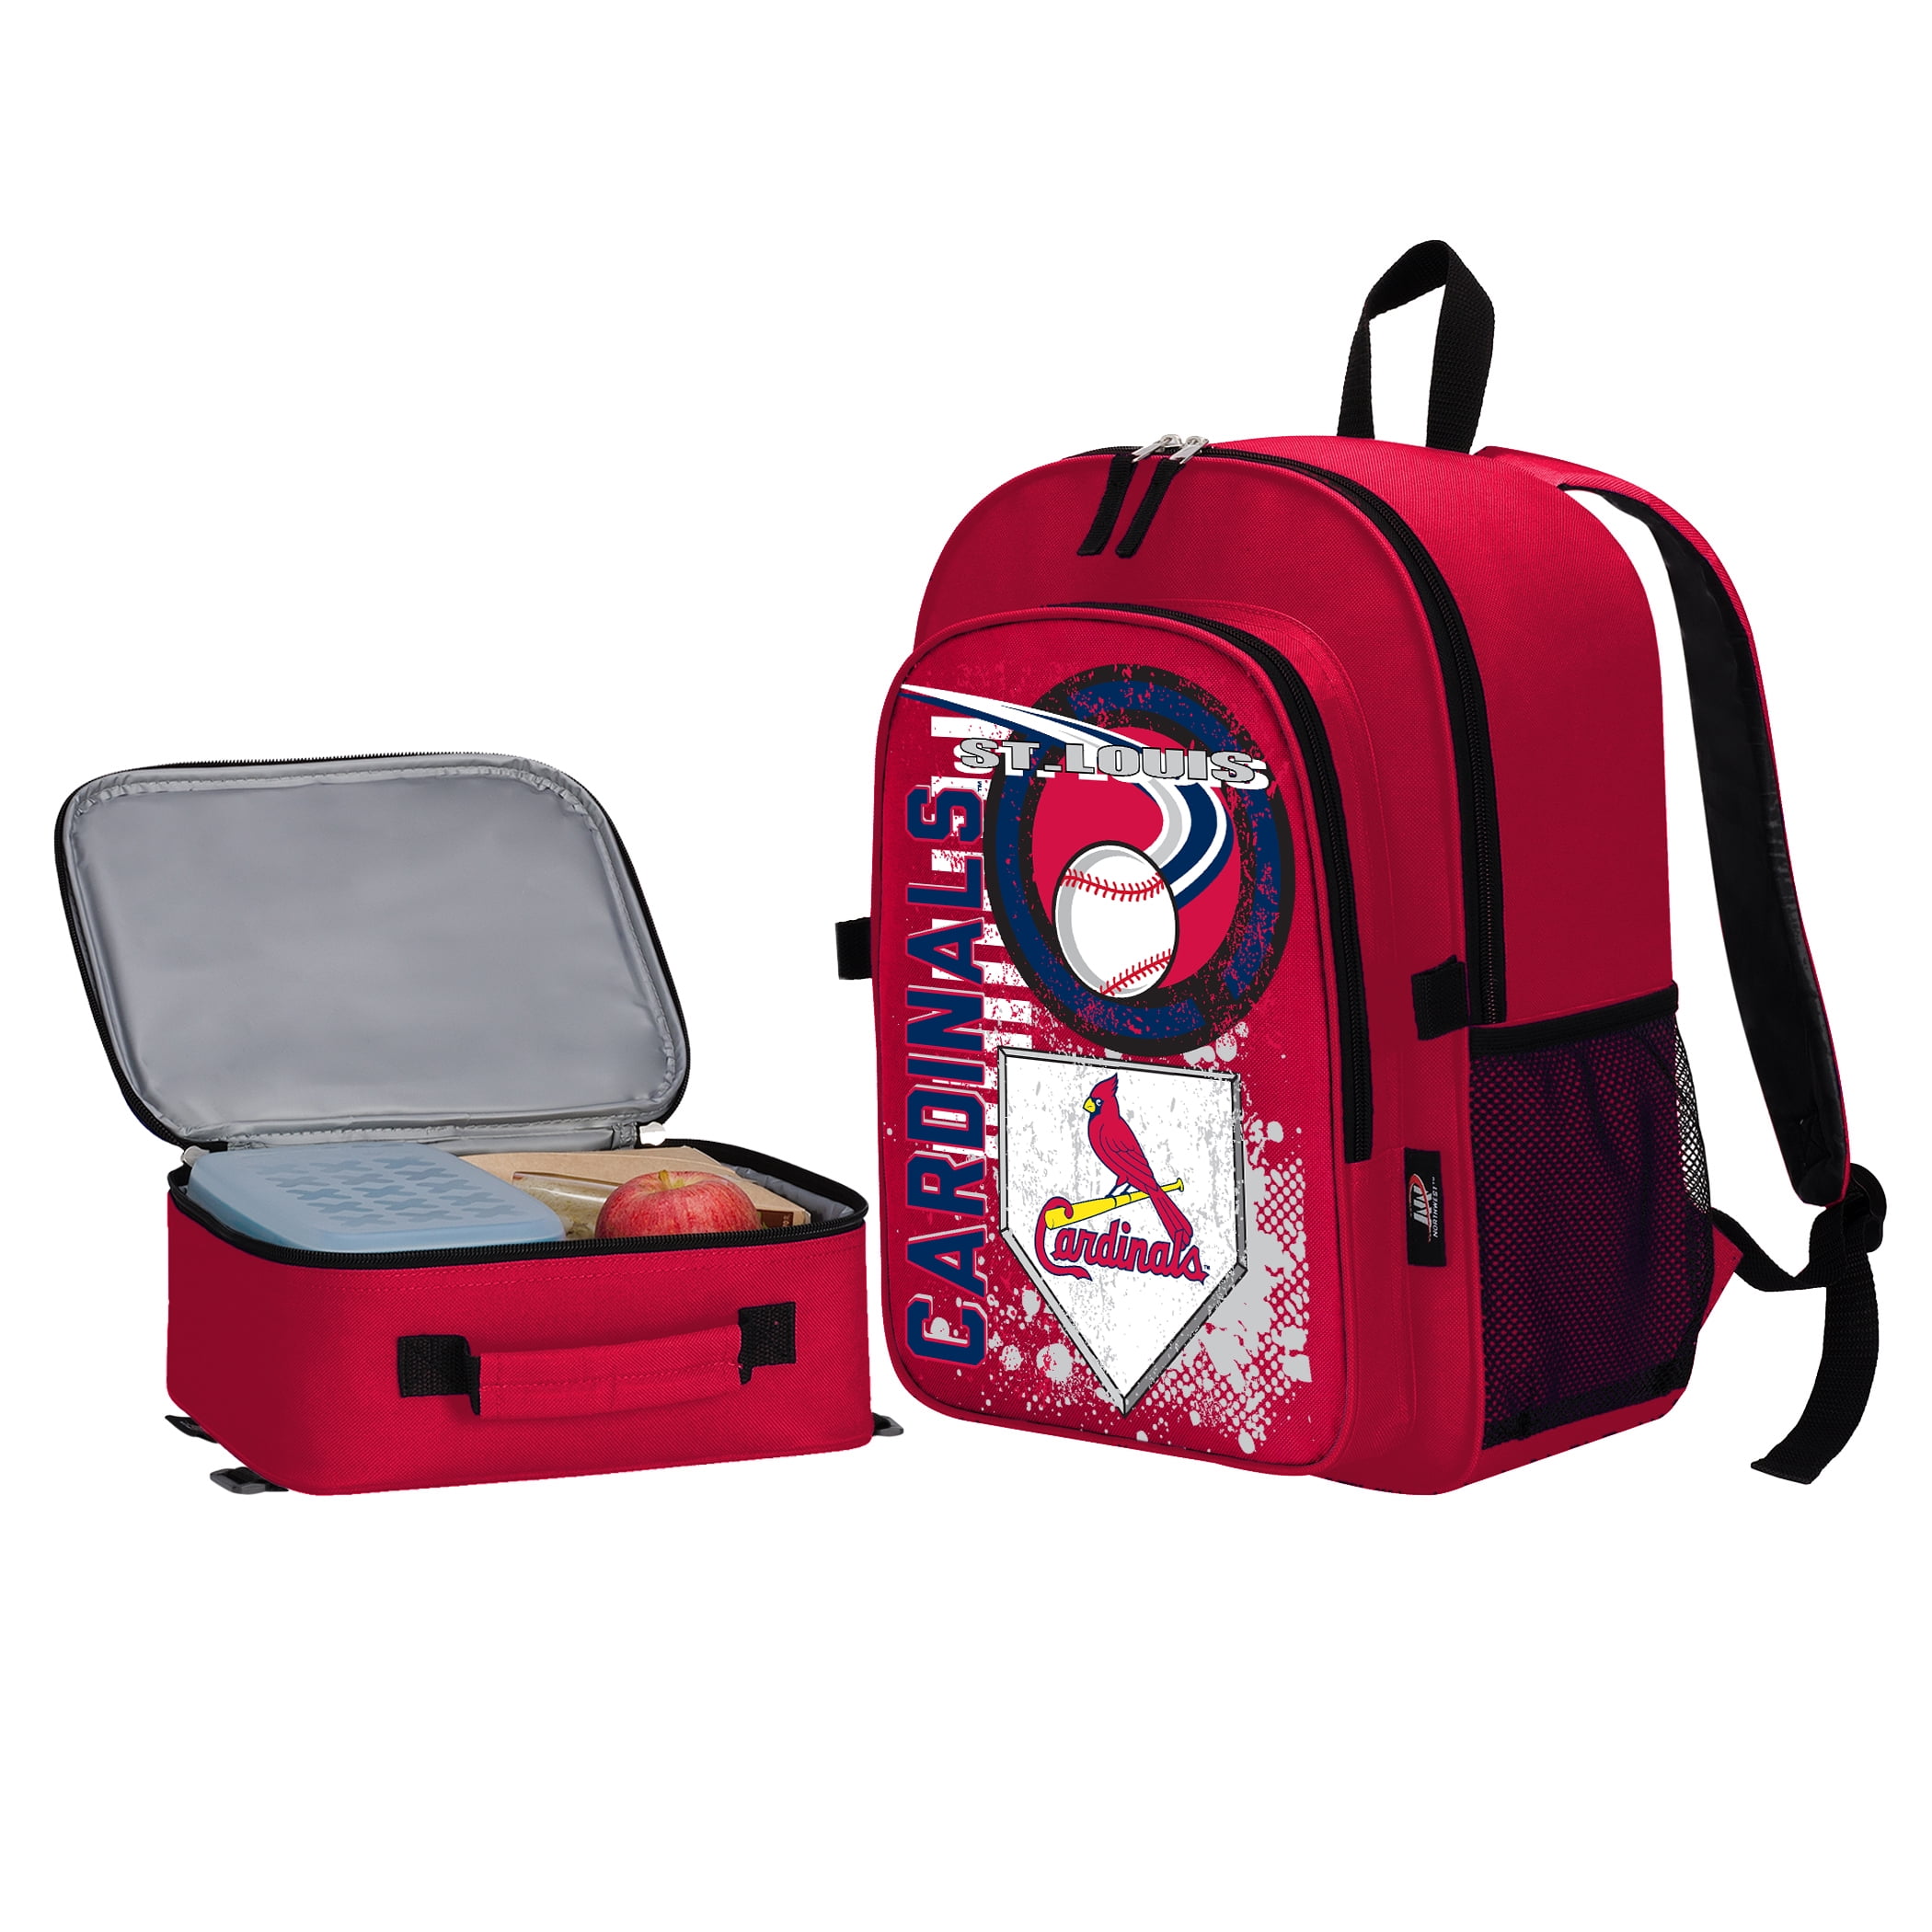 St. Louis Cardinals Baseball Starter Duffle Bag MLB